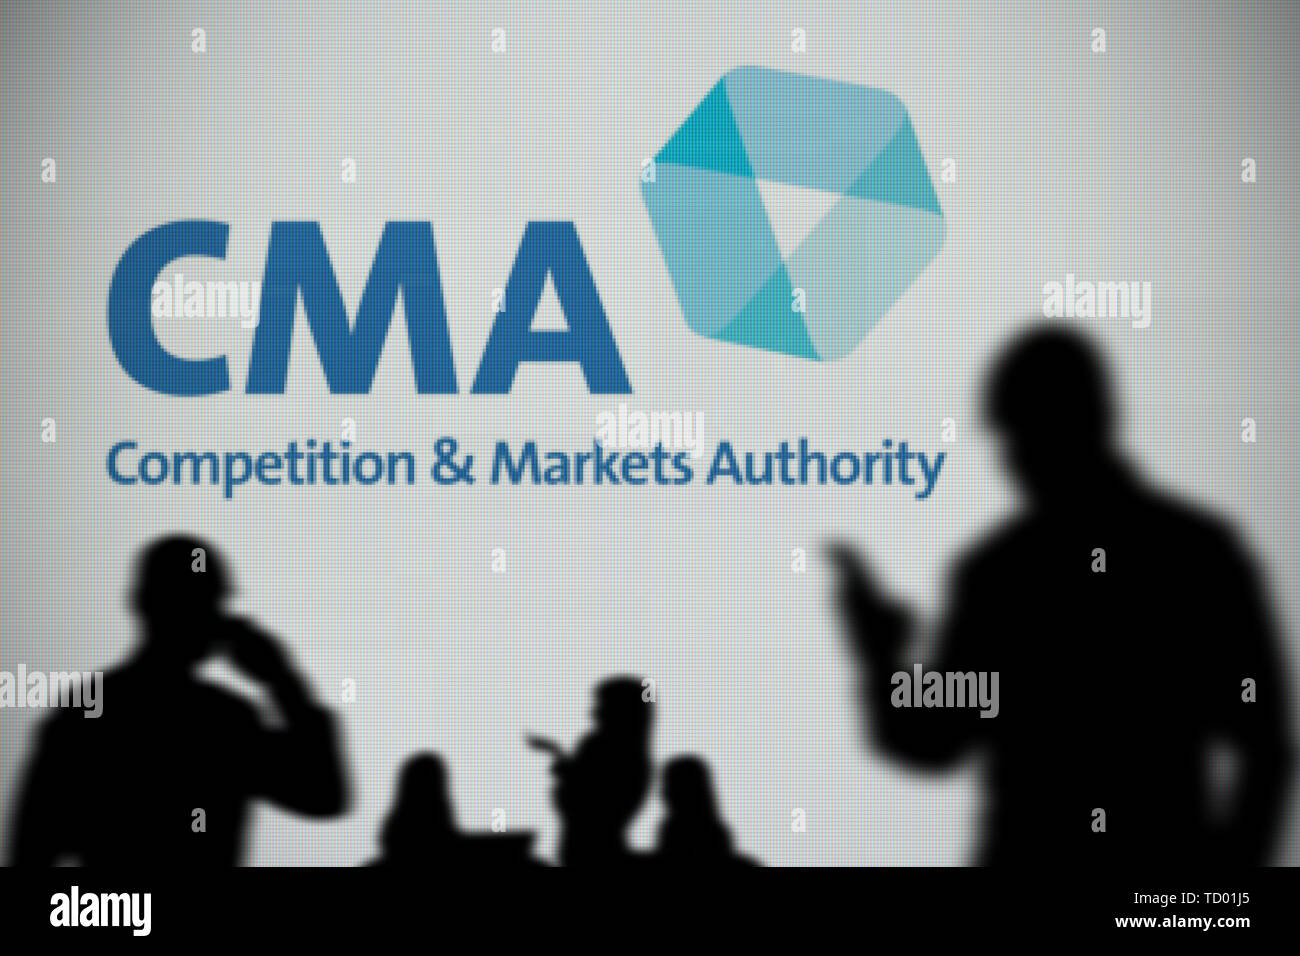 Il logo di CMA è visto su uno schermo a LED in background mentre si profila una persona utilizza uno smartphone in primo piano (solo uso editoriale) Foto Stock